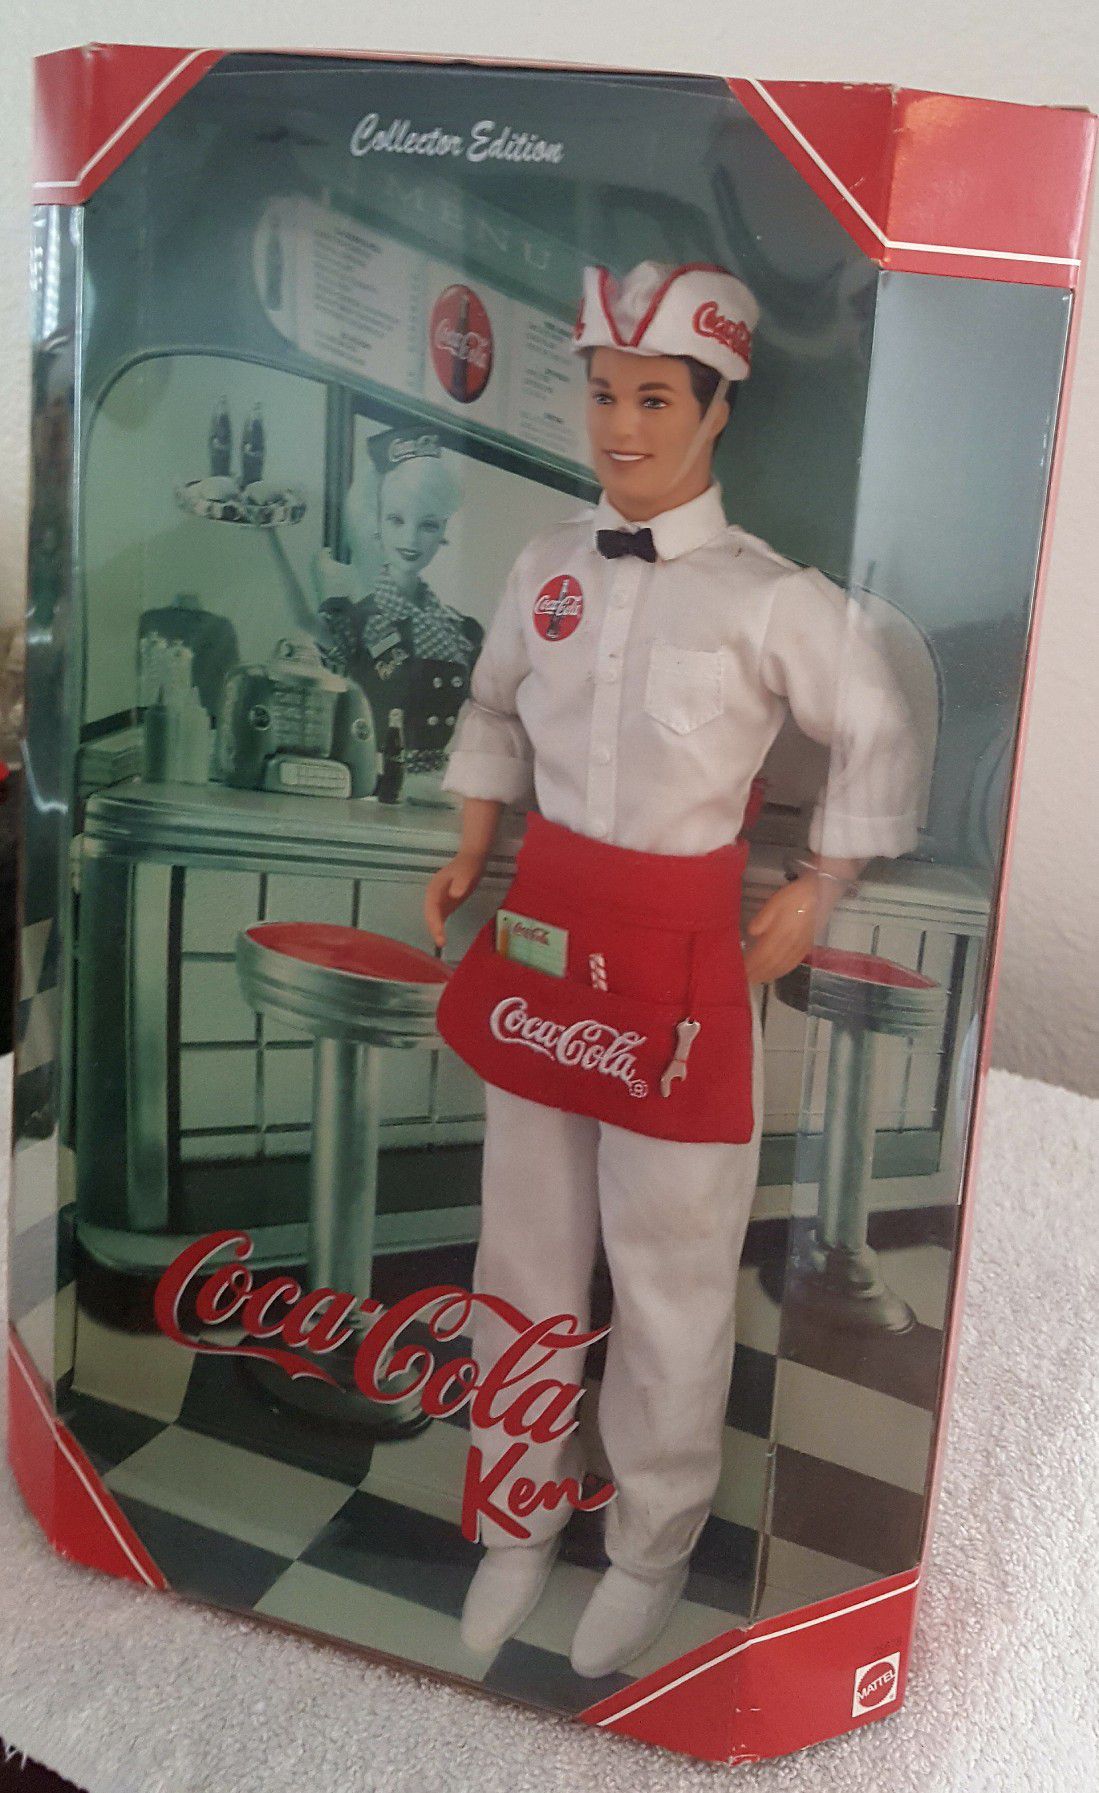 NEW Coca-Cola Soda Jerk Ken Barbie Collector Doll Collector Edition